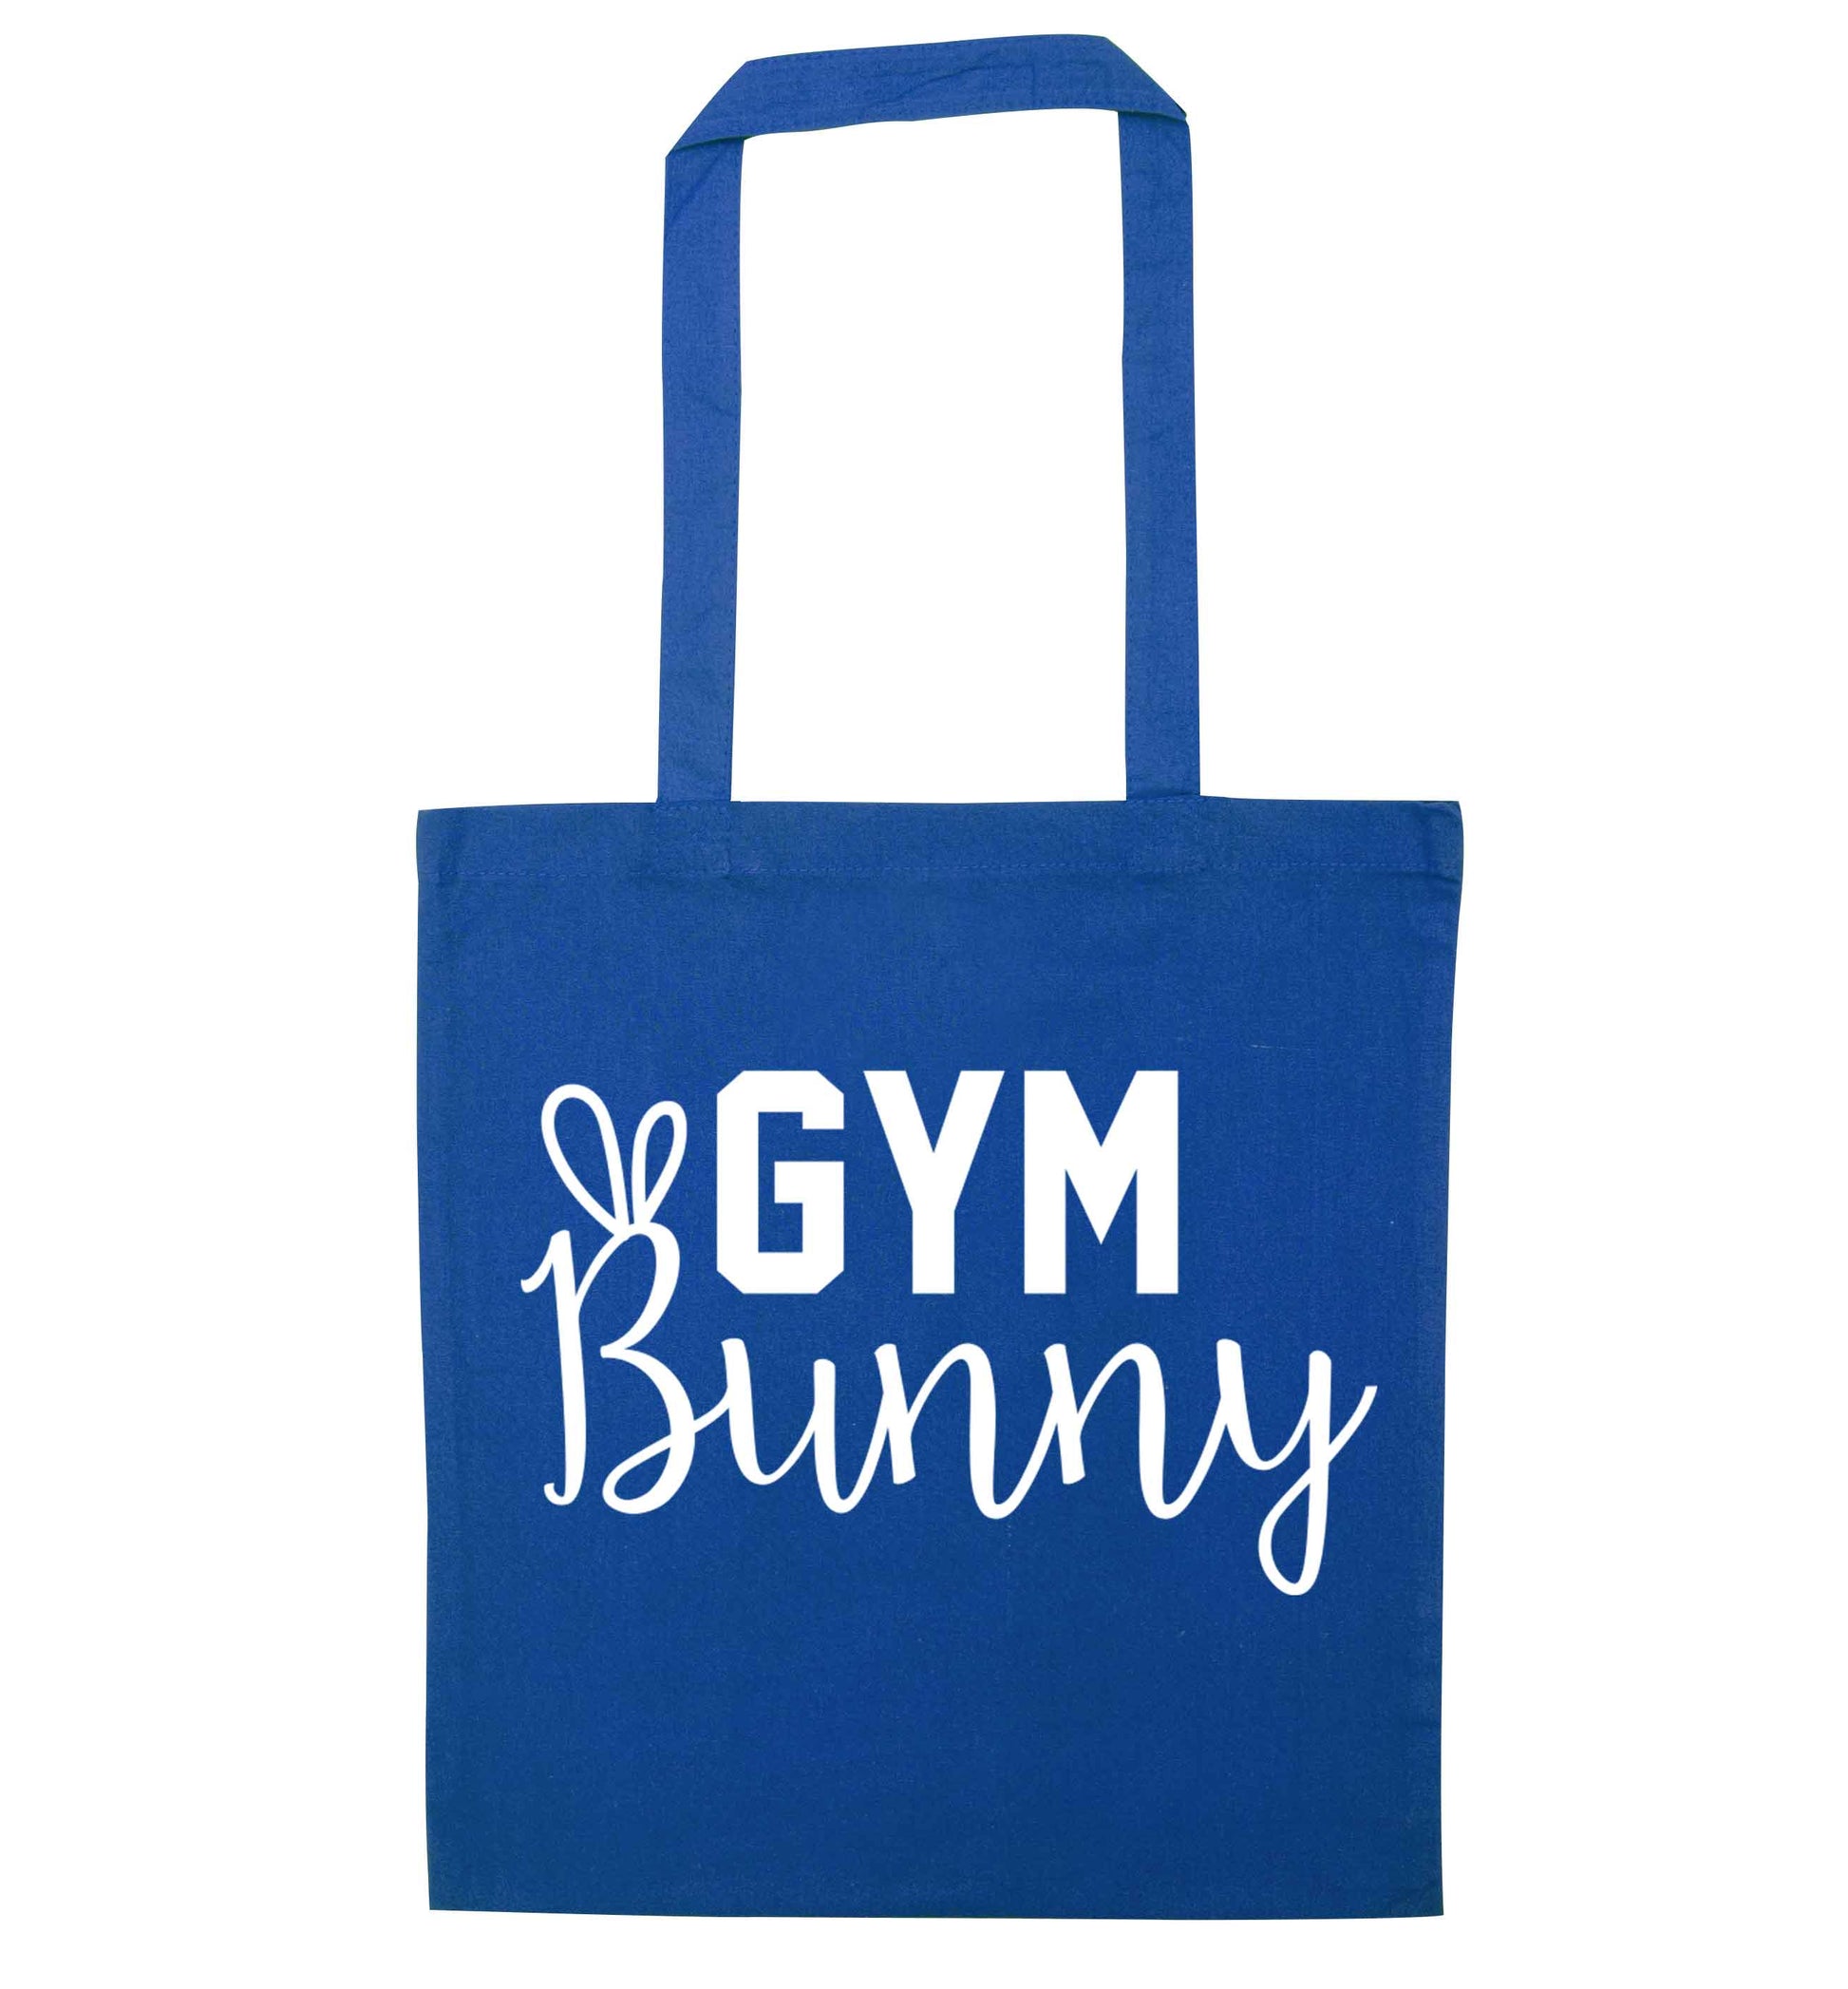 gym bunny blue tote bag